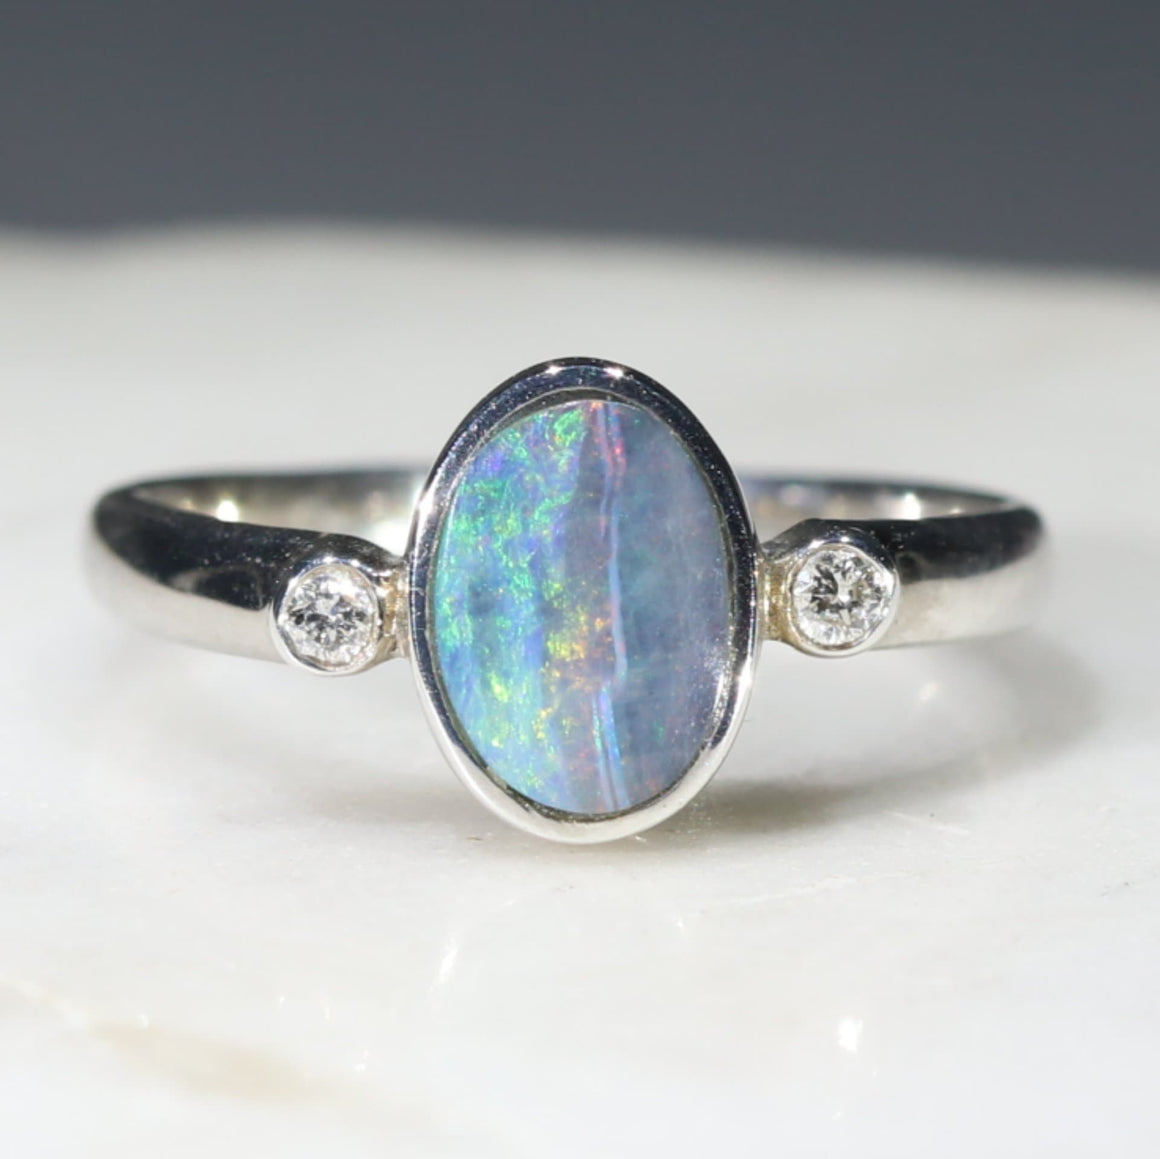 Real Australian Opal Silver Rings